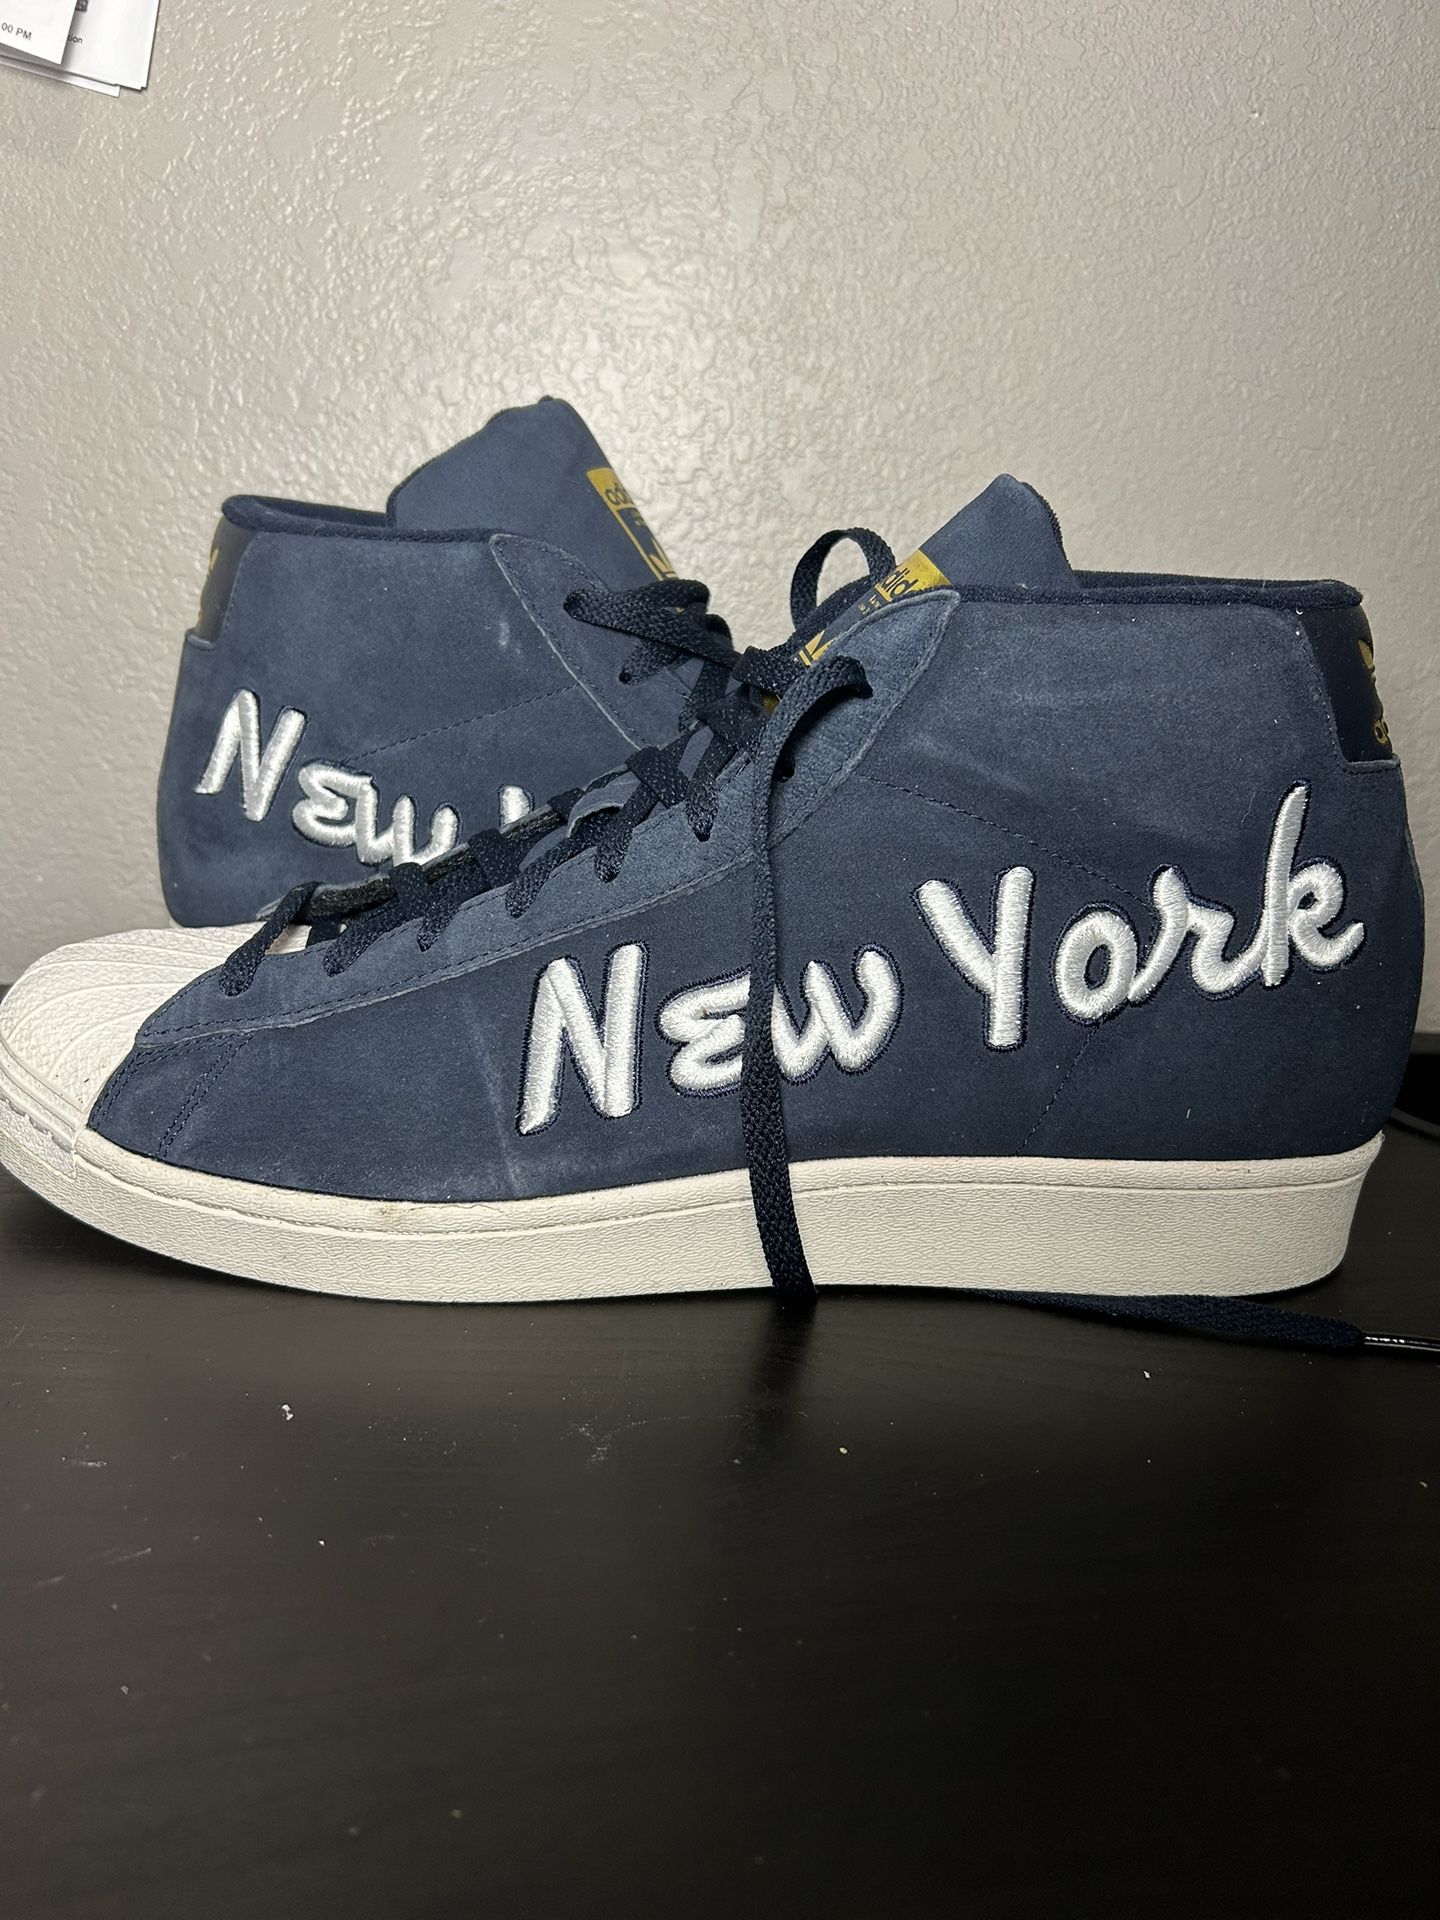 Adidas Superstars New York